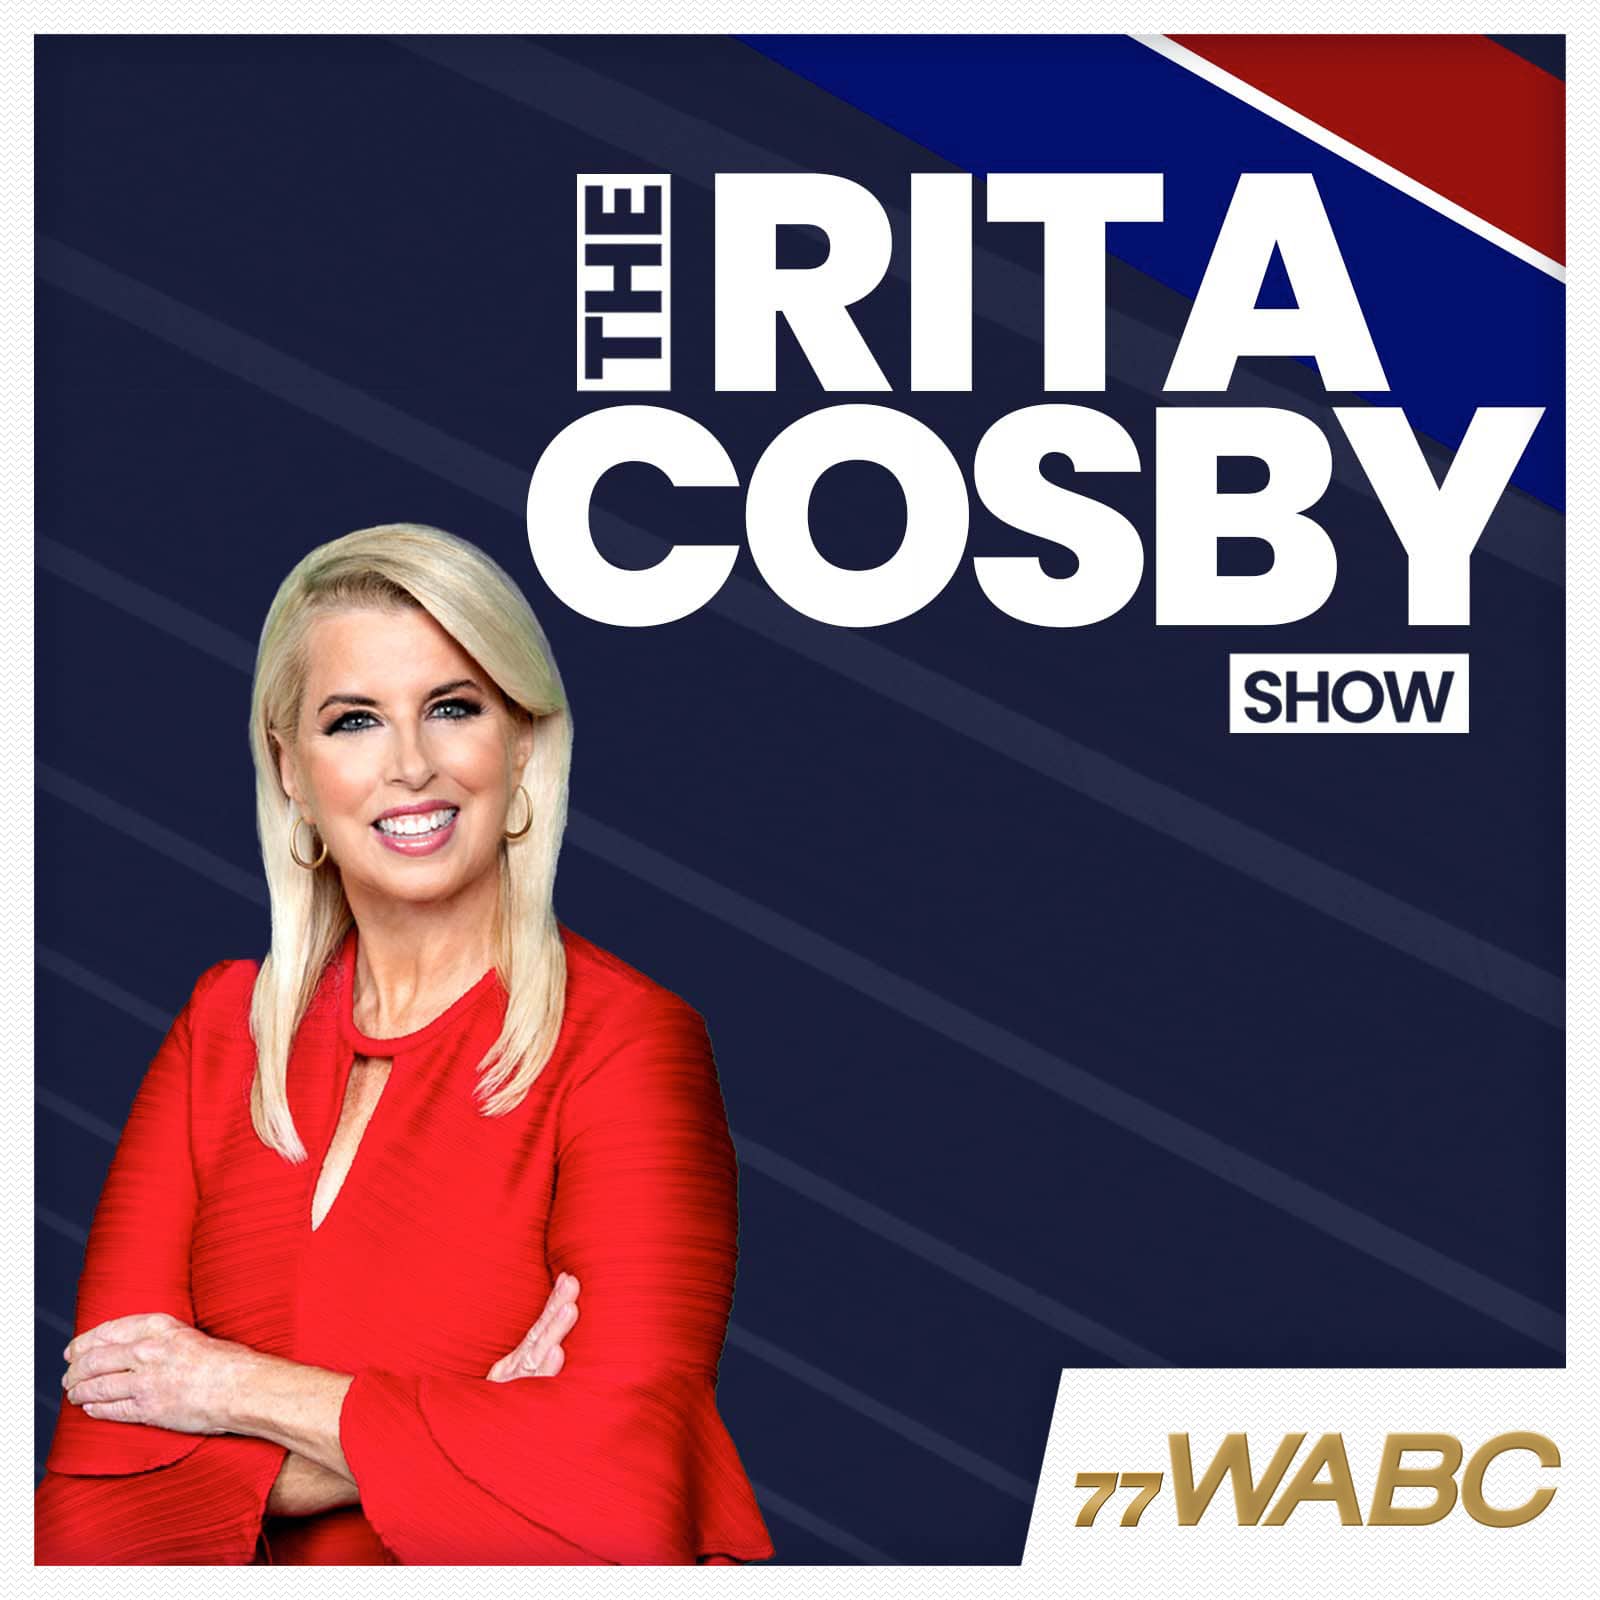 rita-cosby-podcast-new-logo822269